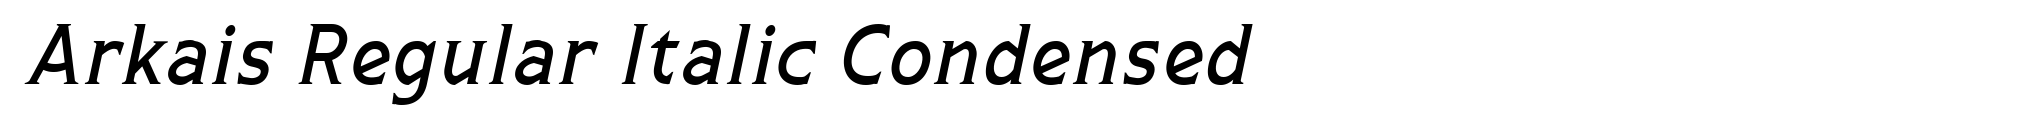 Arkais Regular Italic Condensed image